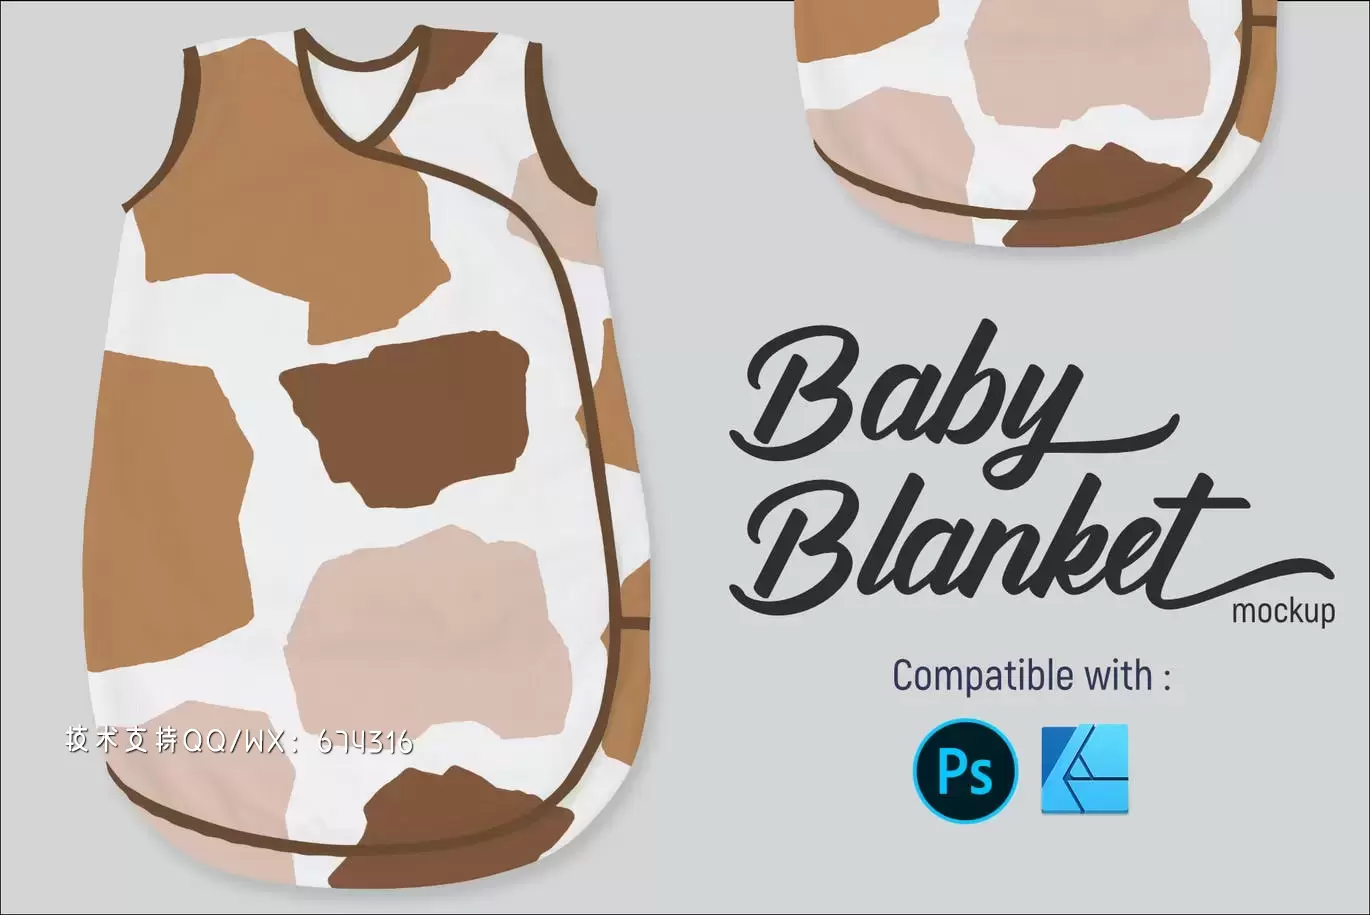 婴儿毯设计展示样机 (PSD,JPG)免费下载